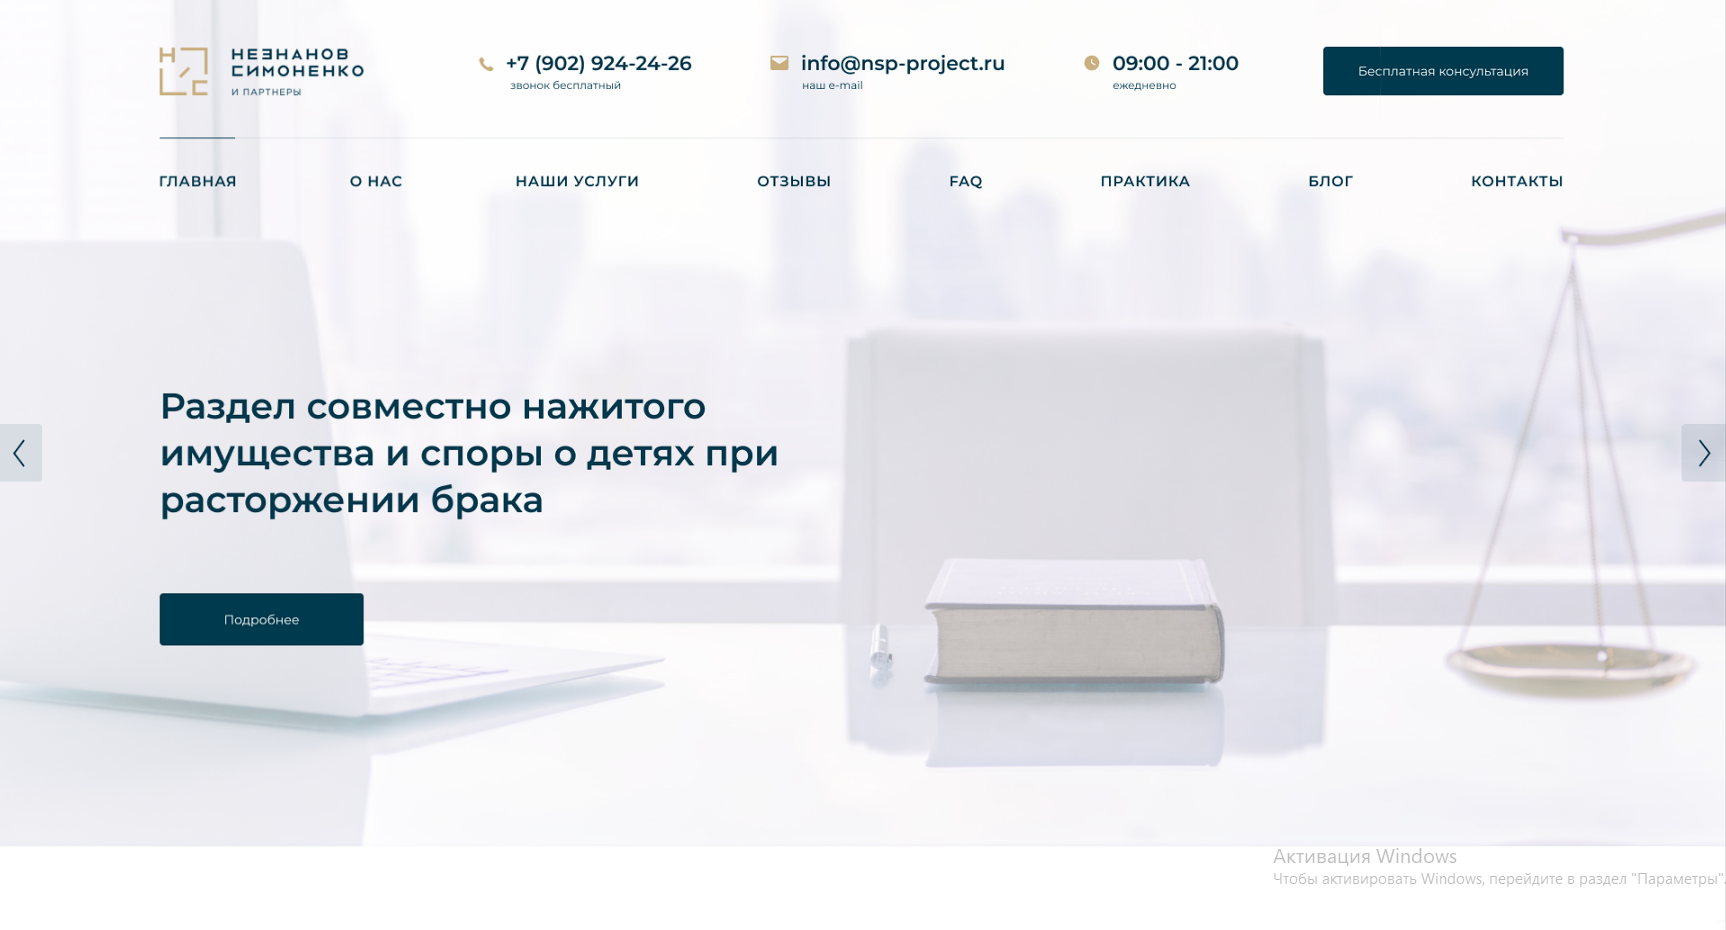 Создание сайта для компании Незнанов Симоненко